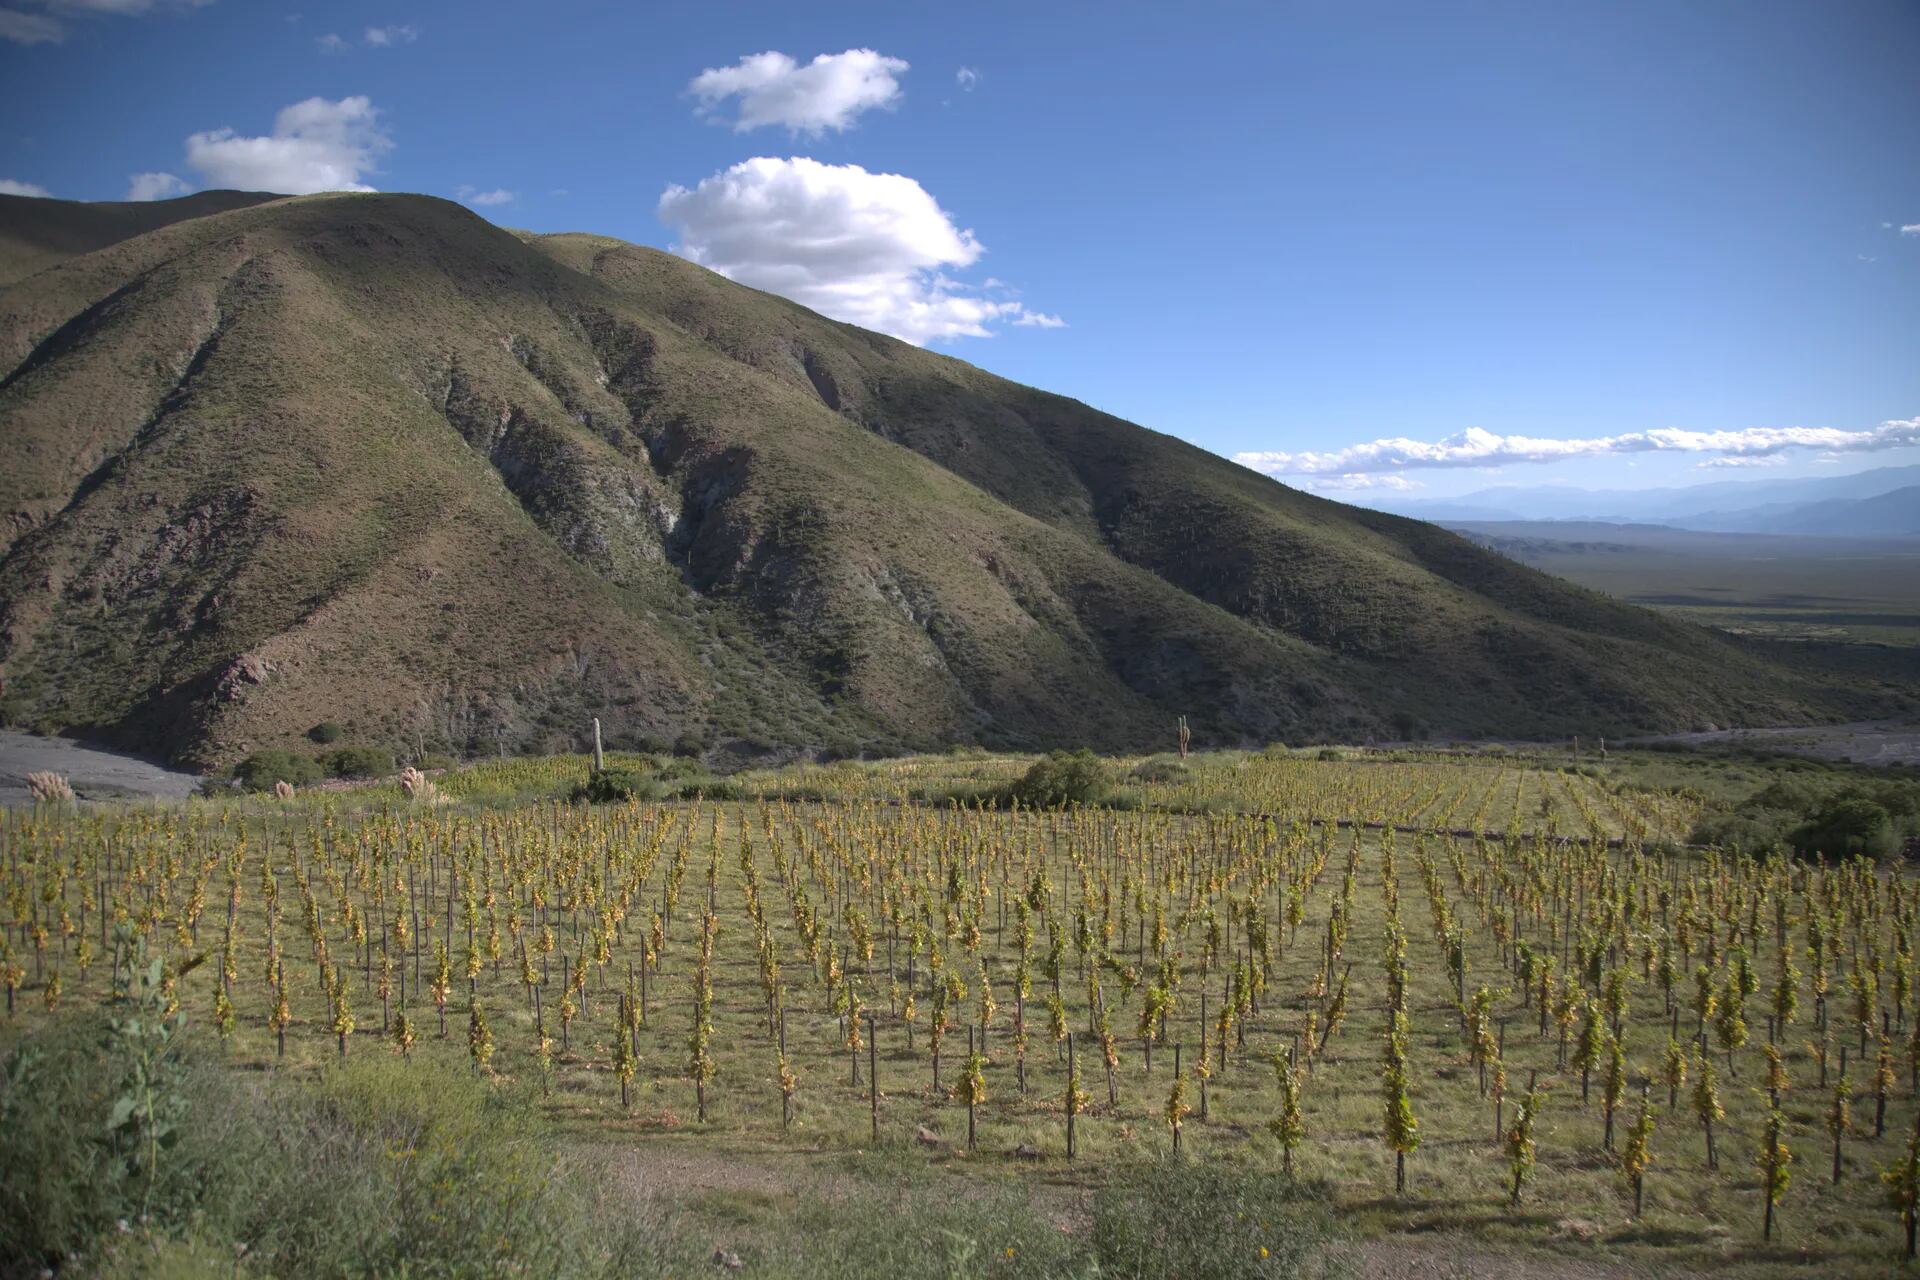 En las afueras de Payogasta se encuentra el viñedo a una altitud de 3.111 metros, donde las uvas reciben más sol.

